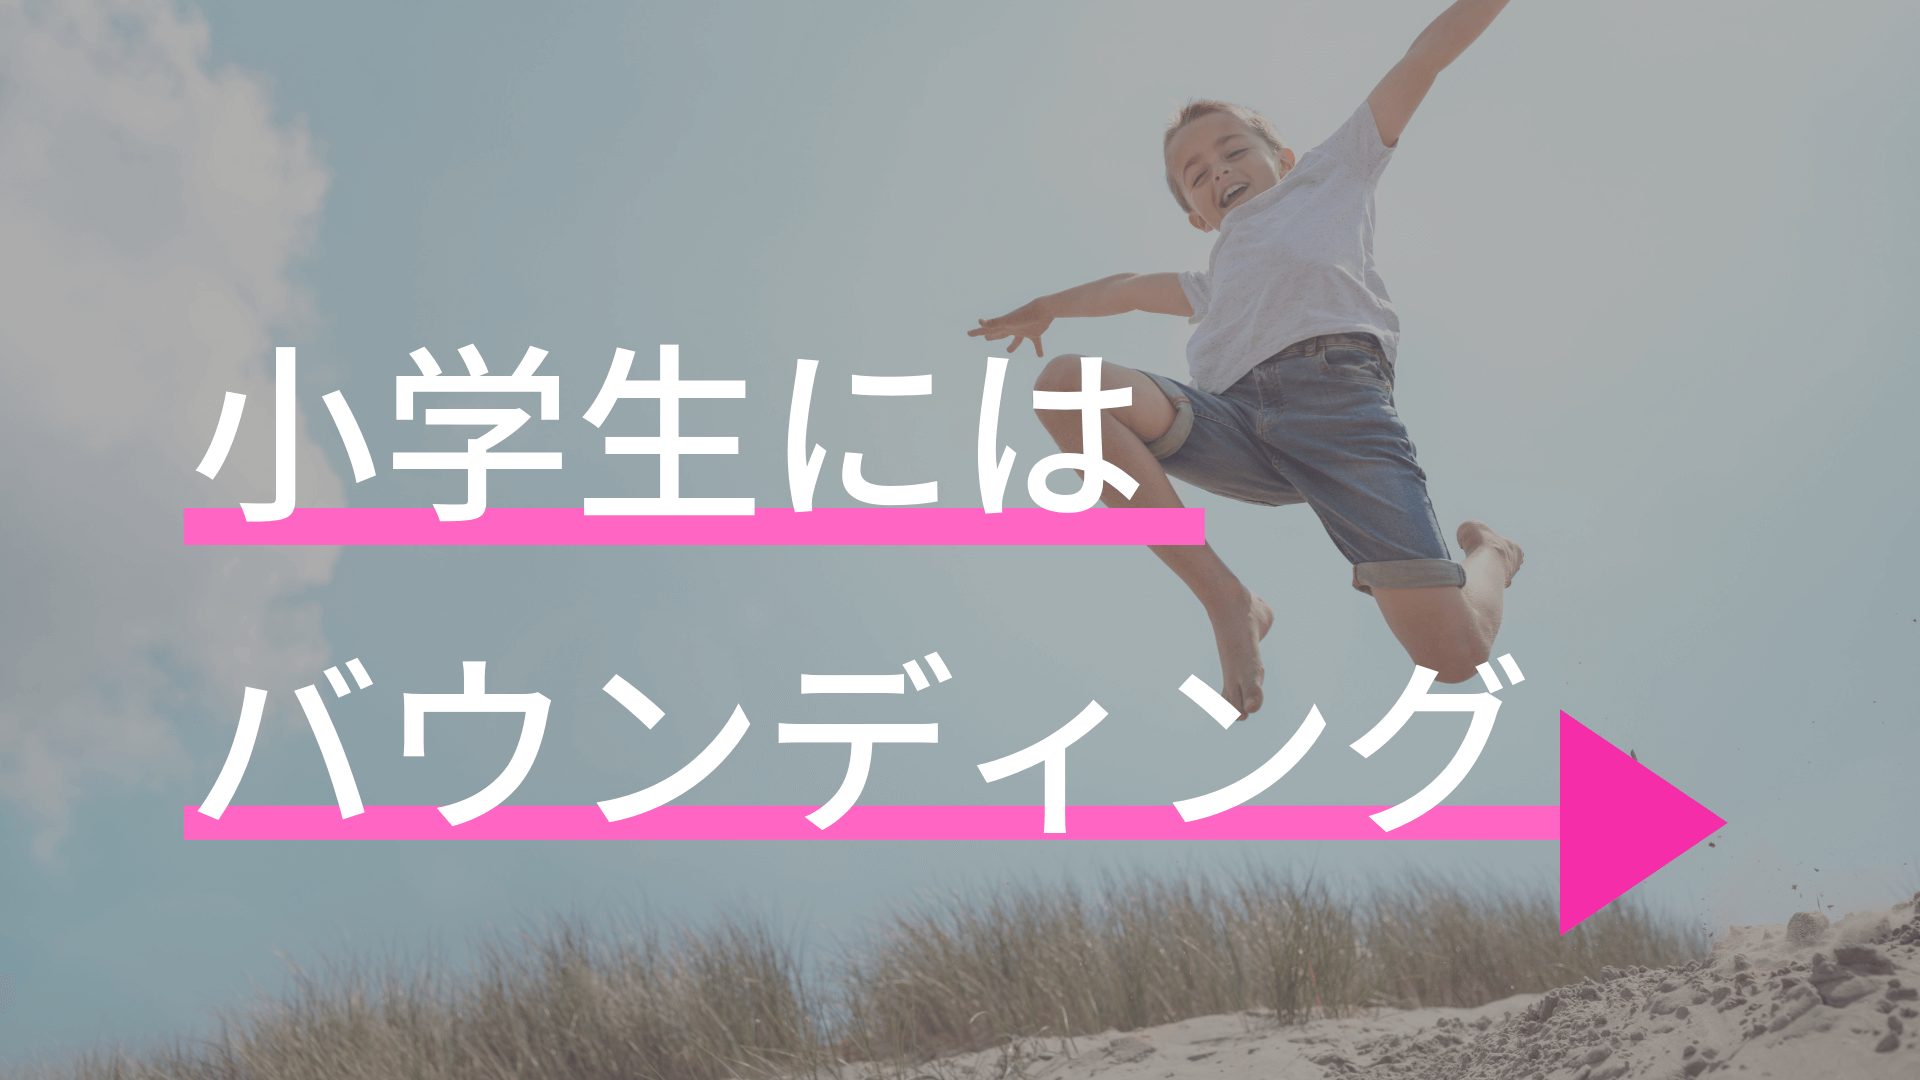 親必見 小学生が速く走るための練習ならバウンディングだけやっておけばいい 東京で小学生の足を確実に速くする ならgoogle 4 9の陸上アカデミア